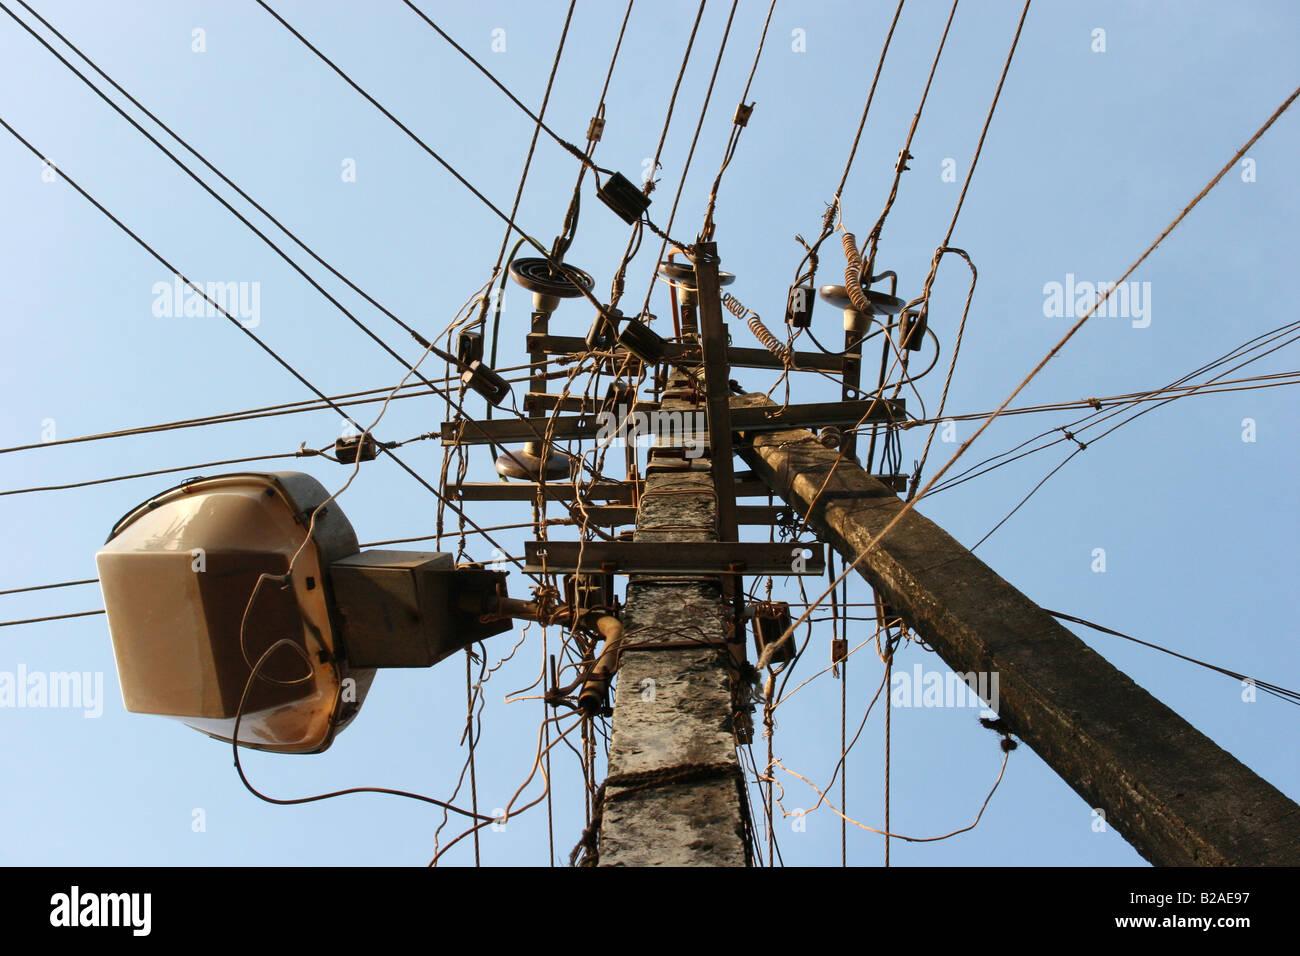 Elektrische Pylon mit zusätzlichen Straße Licht und Telefon-Kabel. Chaotische Dienstprogramme von Indien Stockfoto